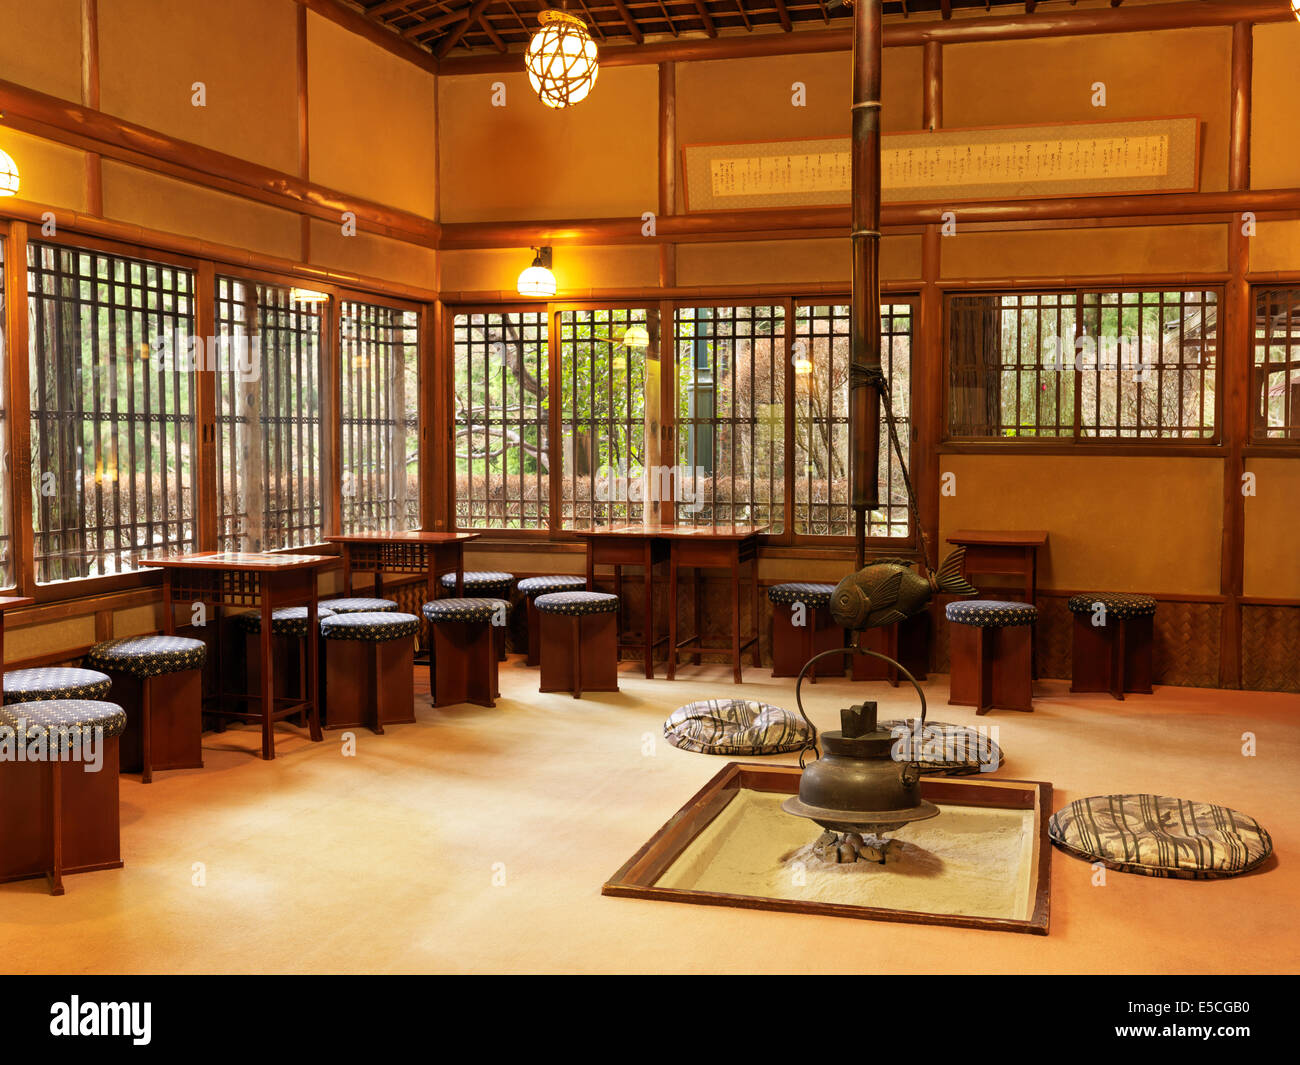 La salle de thé dans un restaurant dans un hôtel ryokan japonais. Gero, le Japon. Banque D'Images